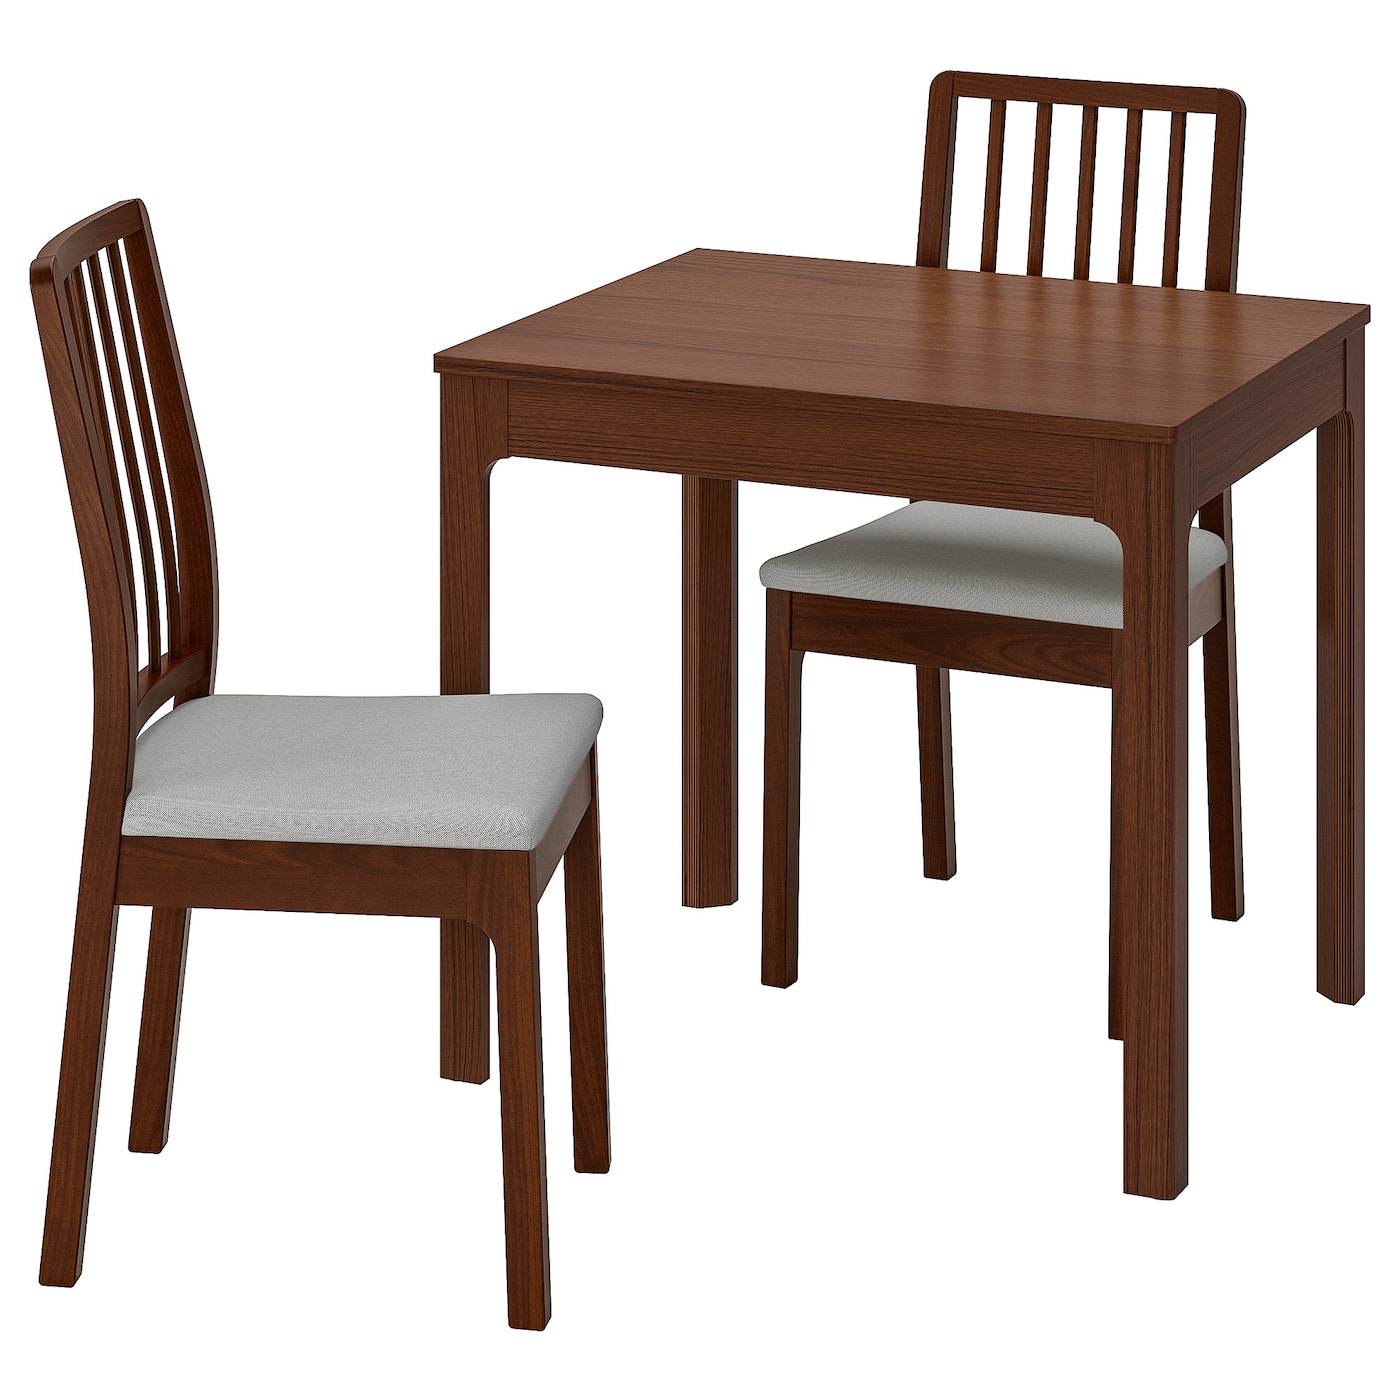 Стол и 2 стула - EKEDALEN / EKEDALEN IKEA/ ЭКЕДАЛЕН ИКЕА, 120х80  см, коричневый